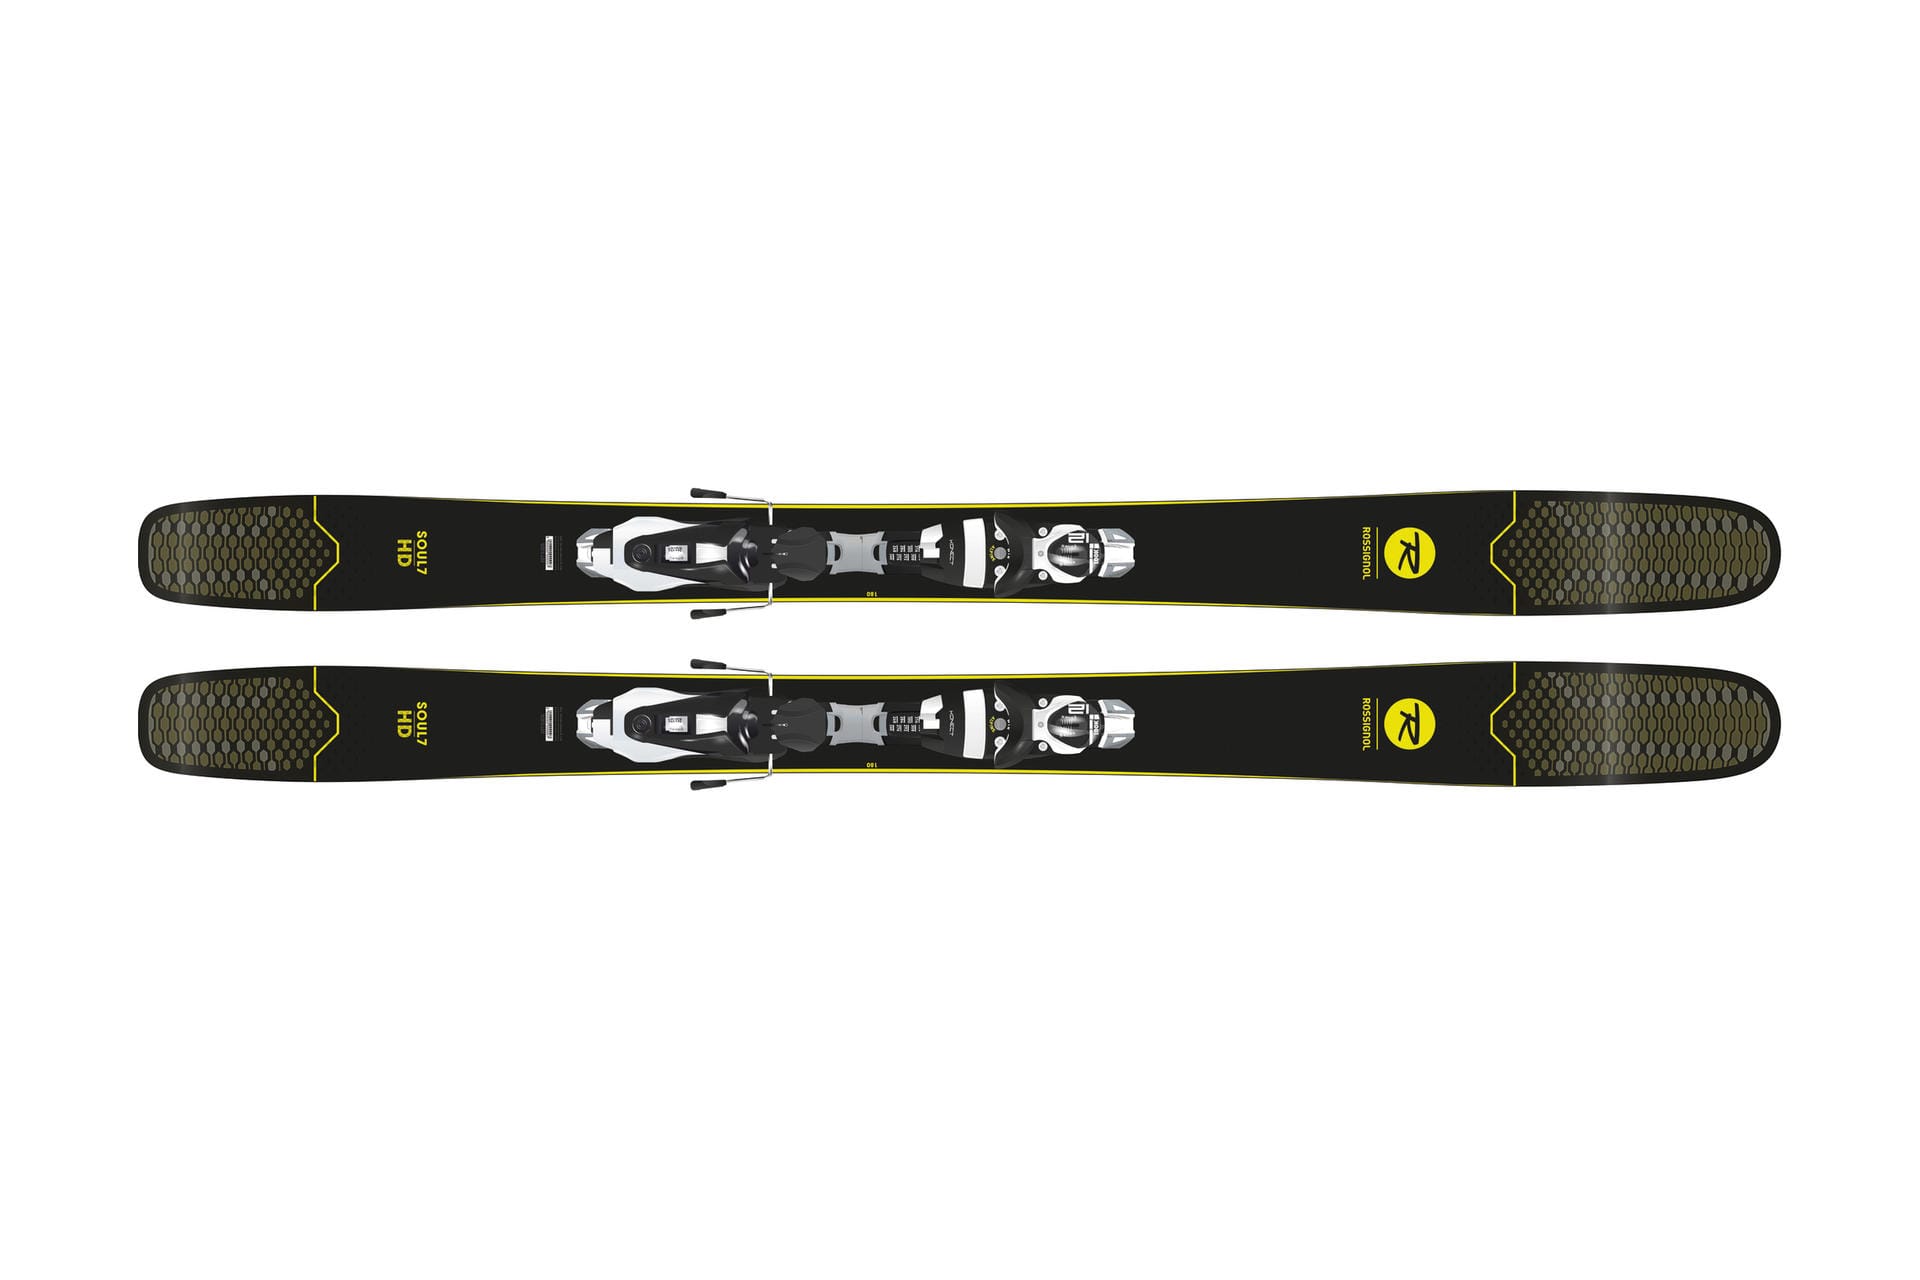 Luft und Wabentechnik in der Skispitze machen den Soul 7 von Rossignol rund 15 Prozent leichter als seinen Vorgänger.